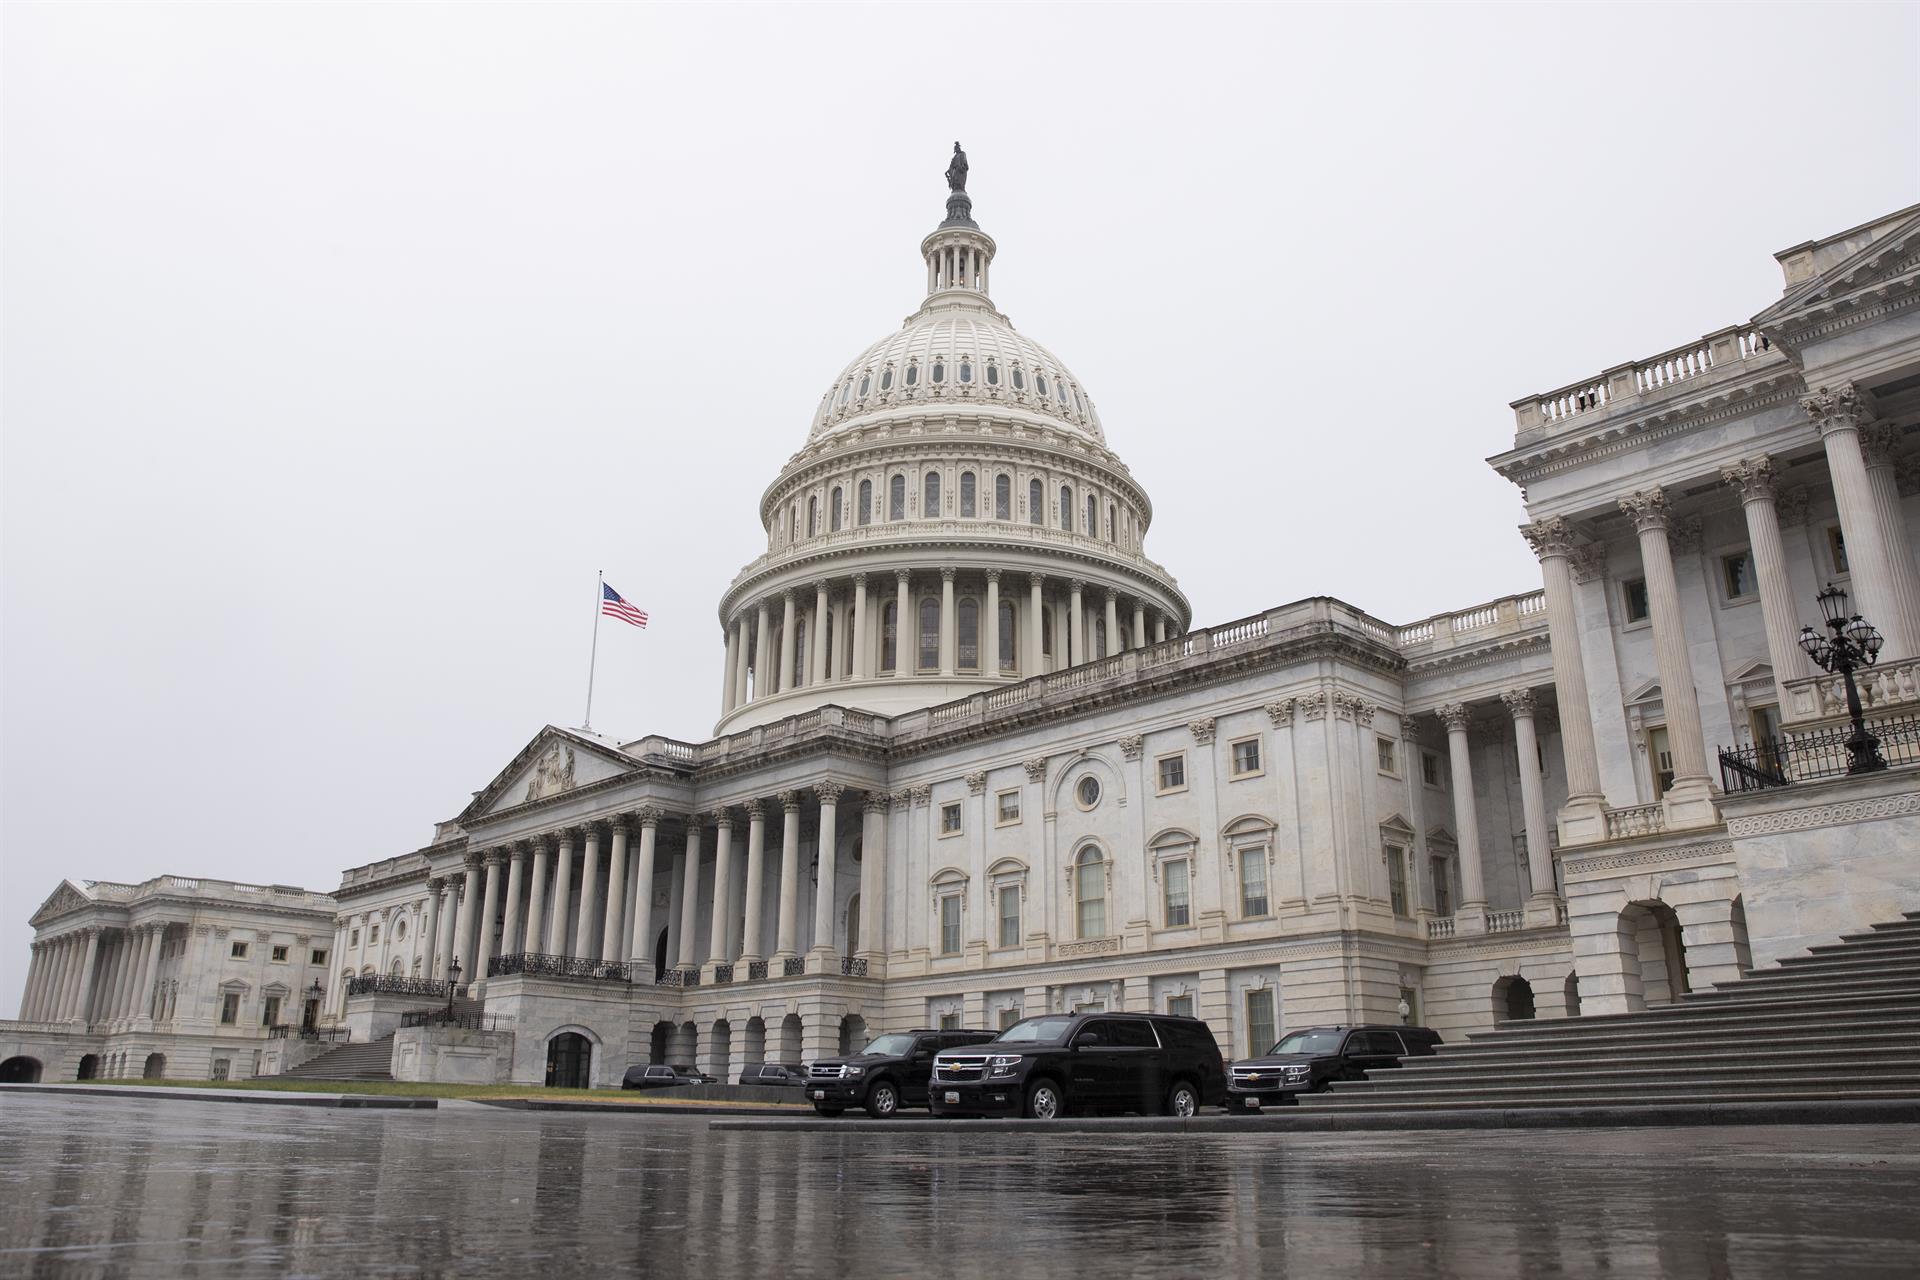 Vista del Capitolio de Estados Unidos, sede del Congreso del país, en una fotografía de archivo. EFE/Michael Reynolds